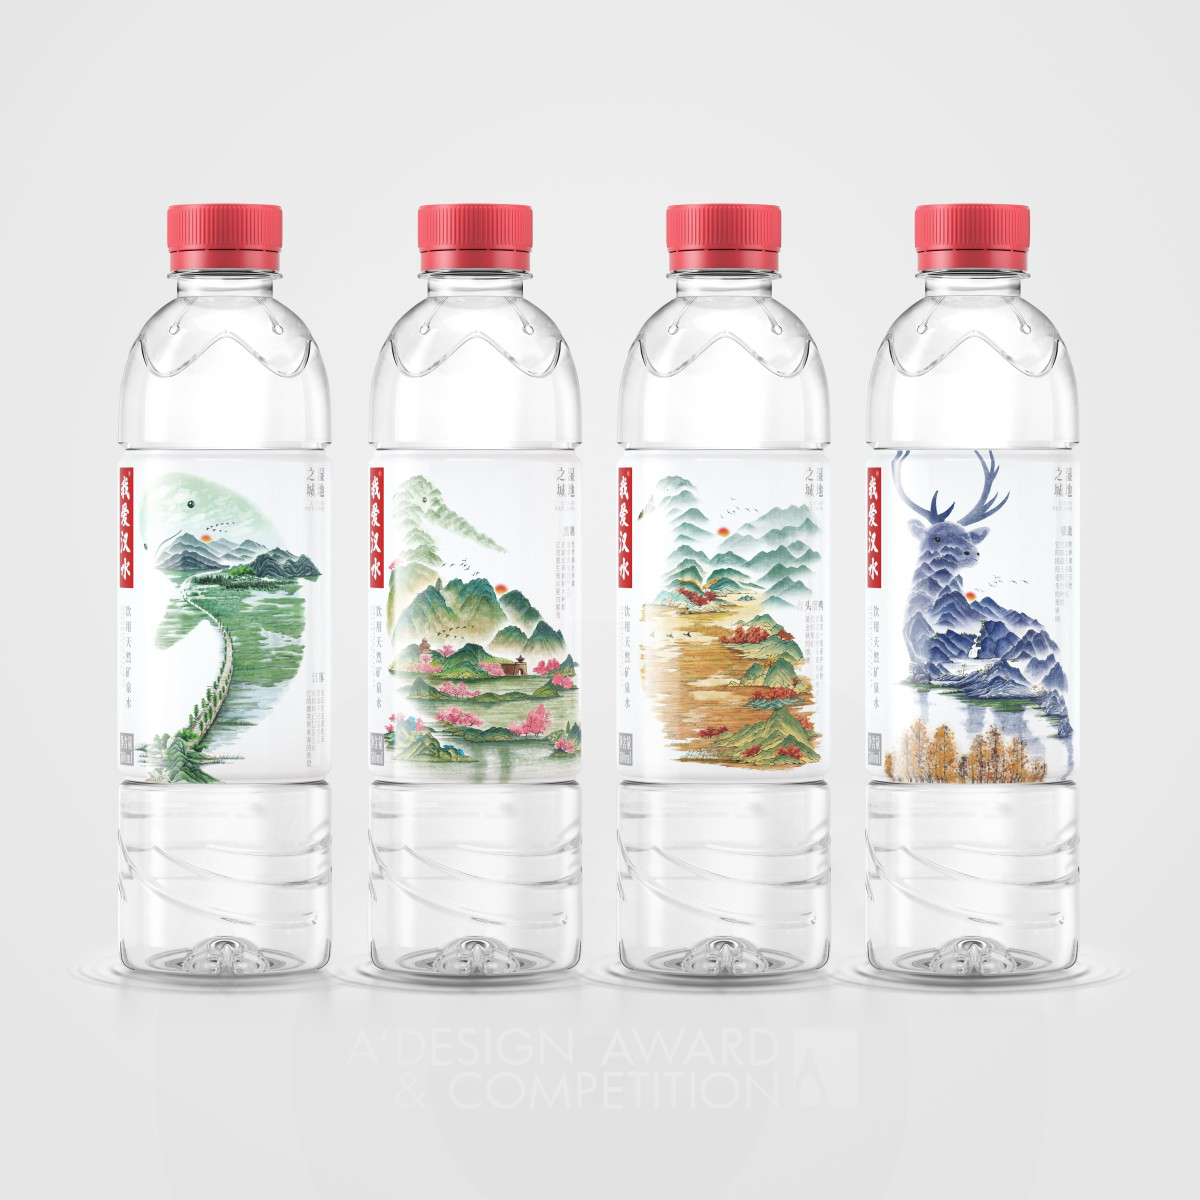 Love Hanshui Water Packaging by Pufine Creative